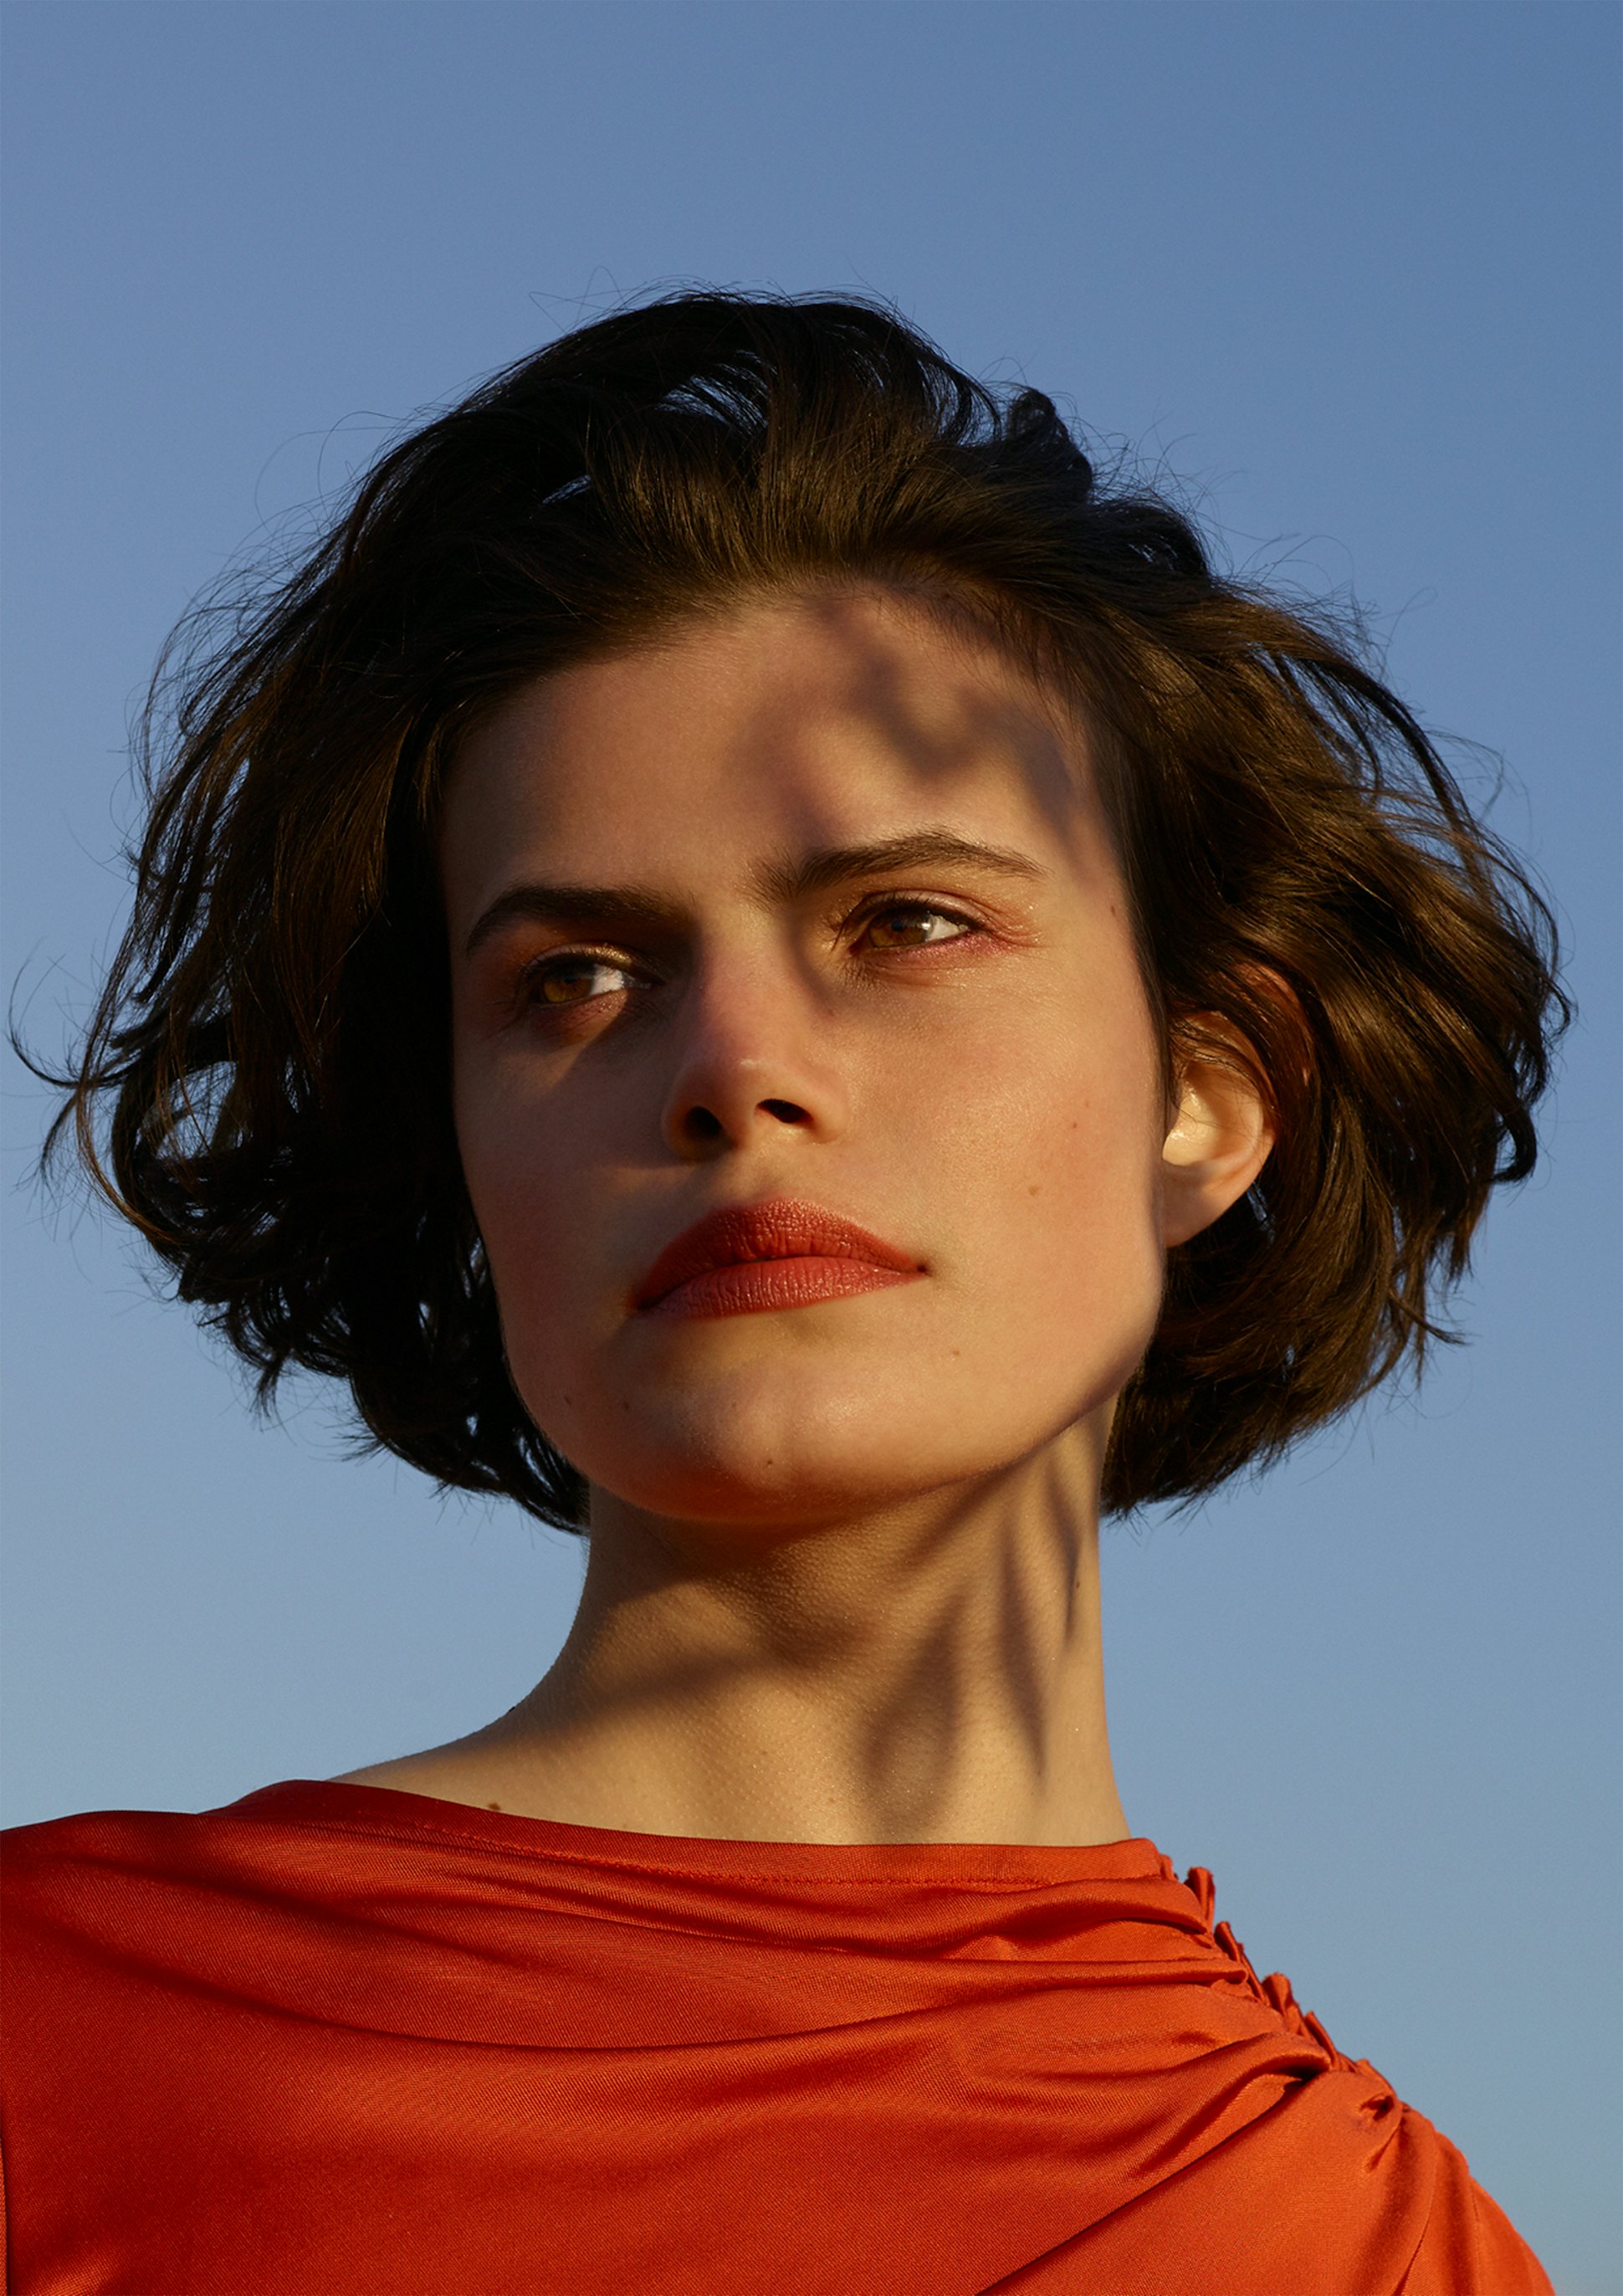 La bouche rouge image de campagne par l'artiste et photographe Viviane Sassen